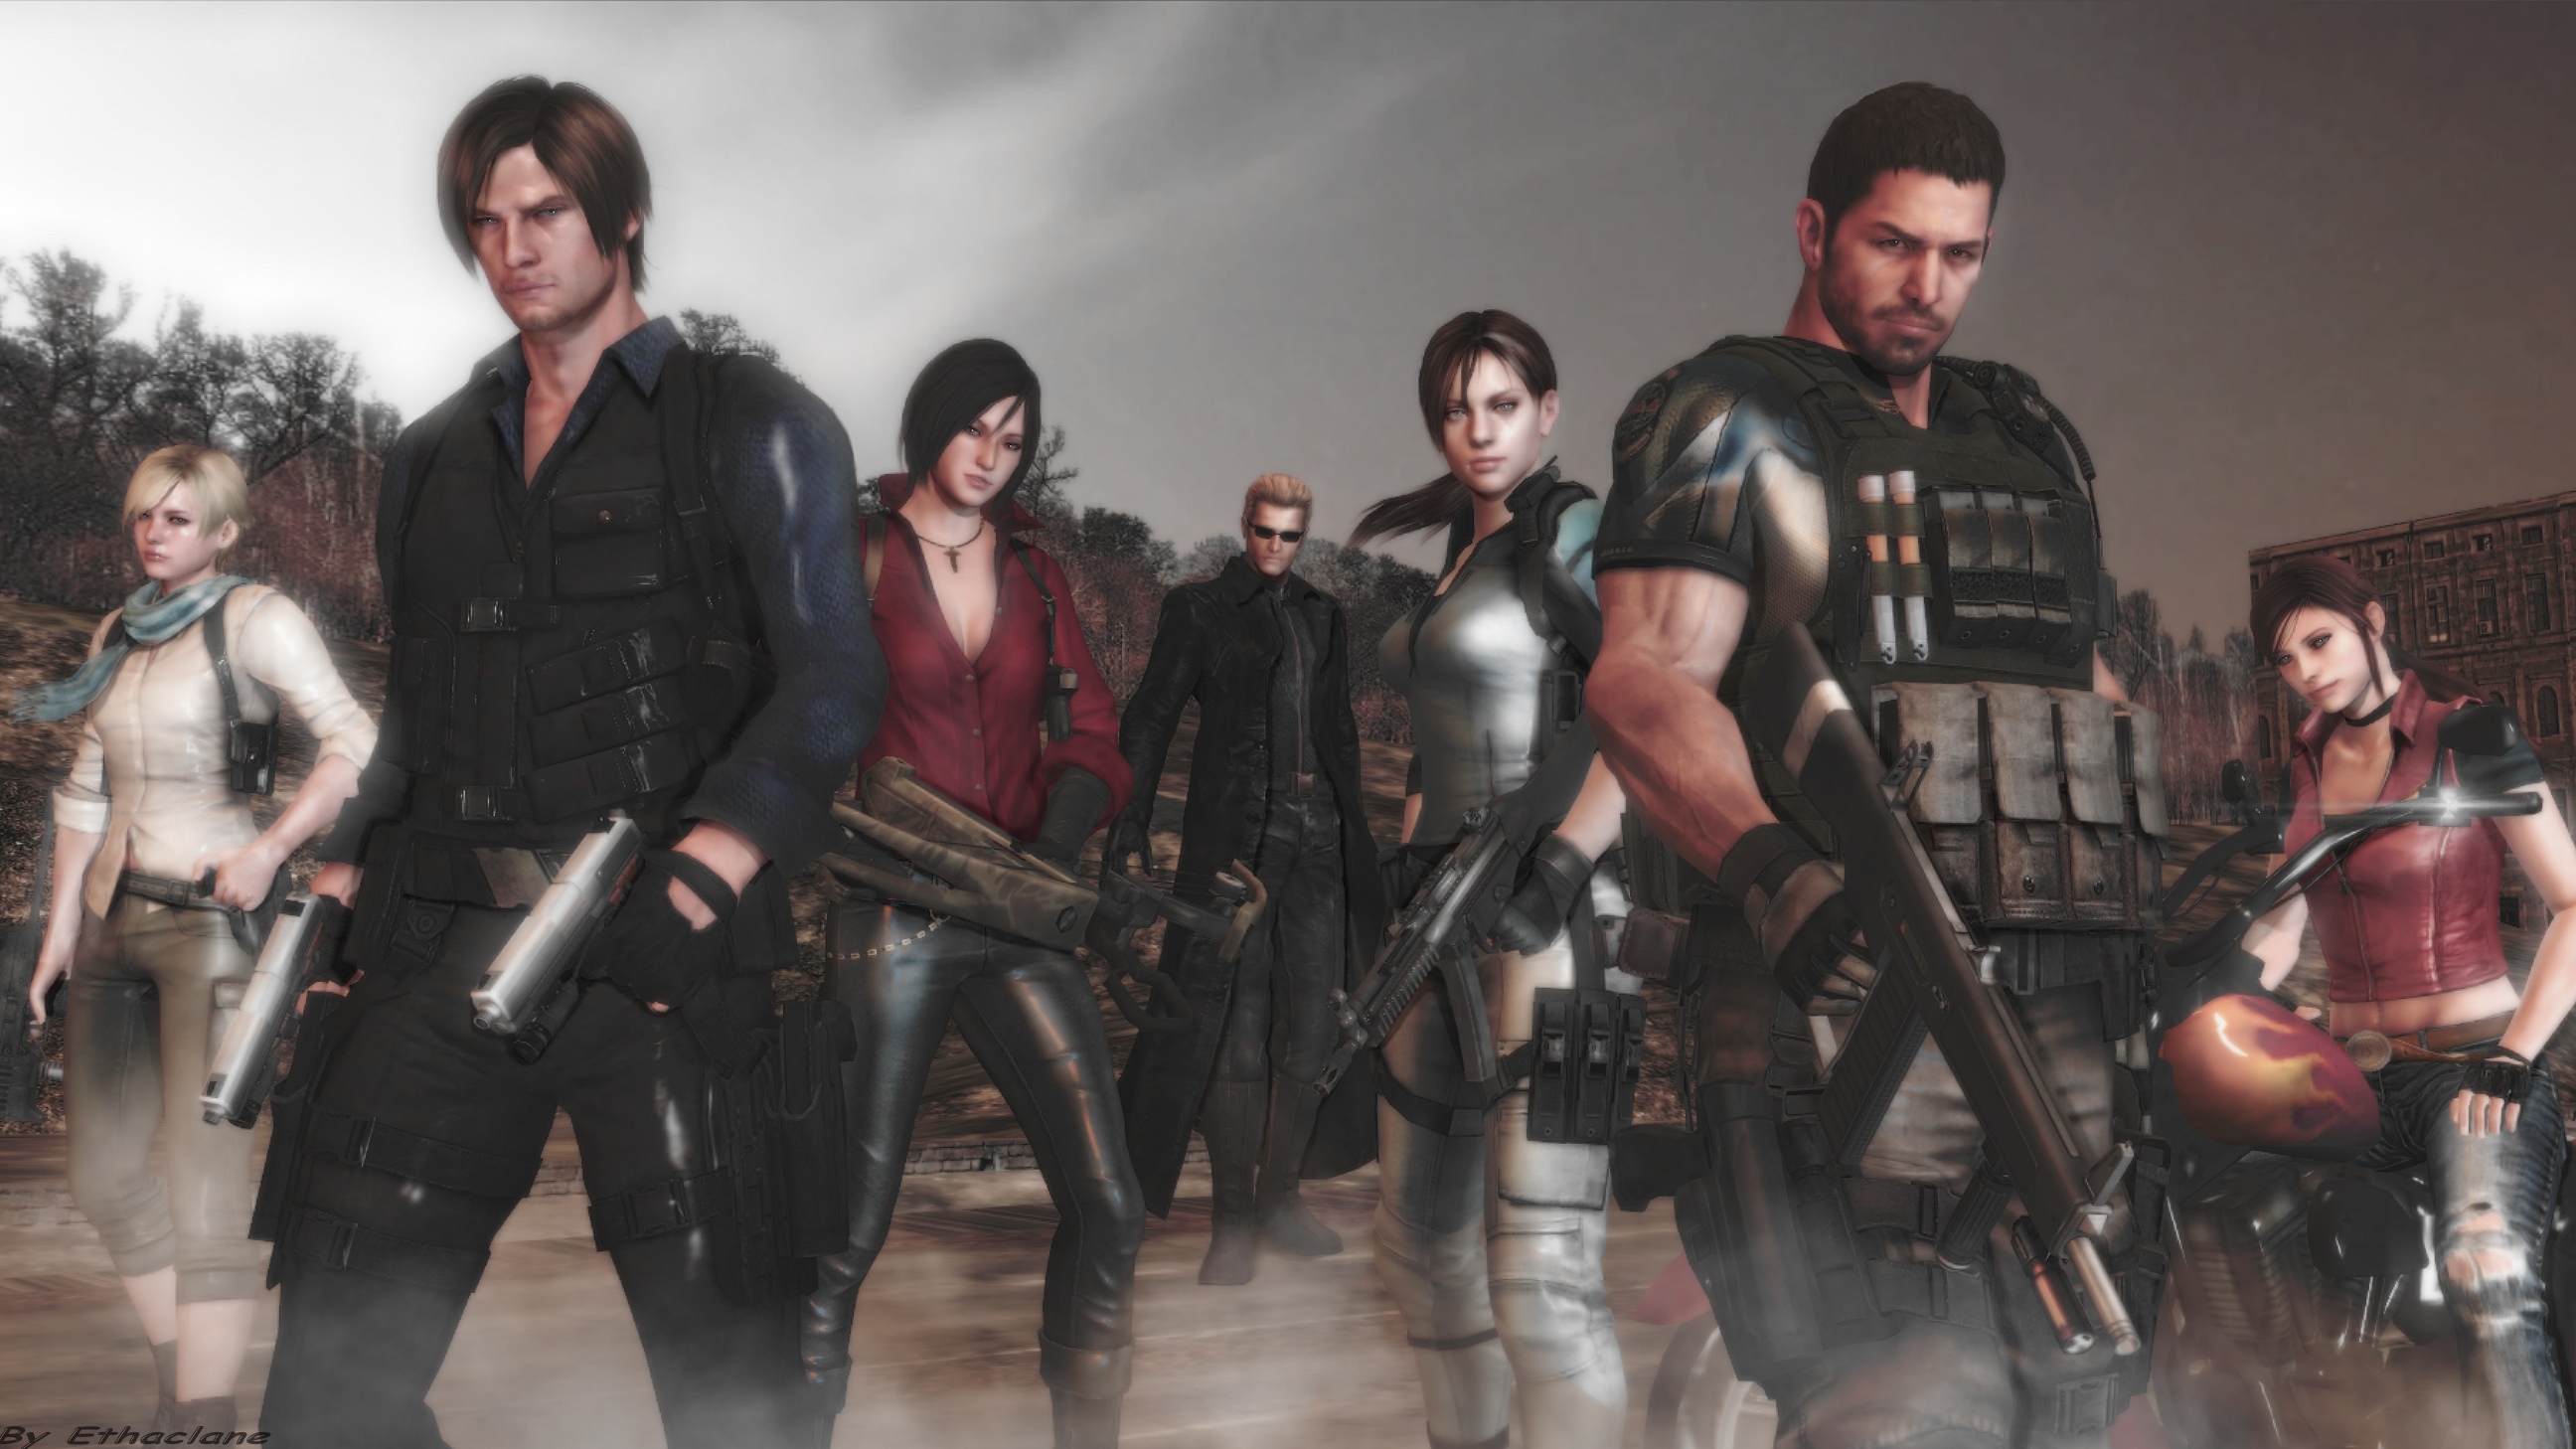 Resident Evil 7 está com quase 10 milhões de vendas!